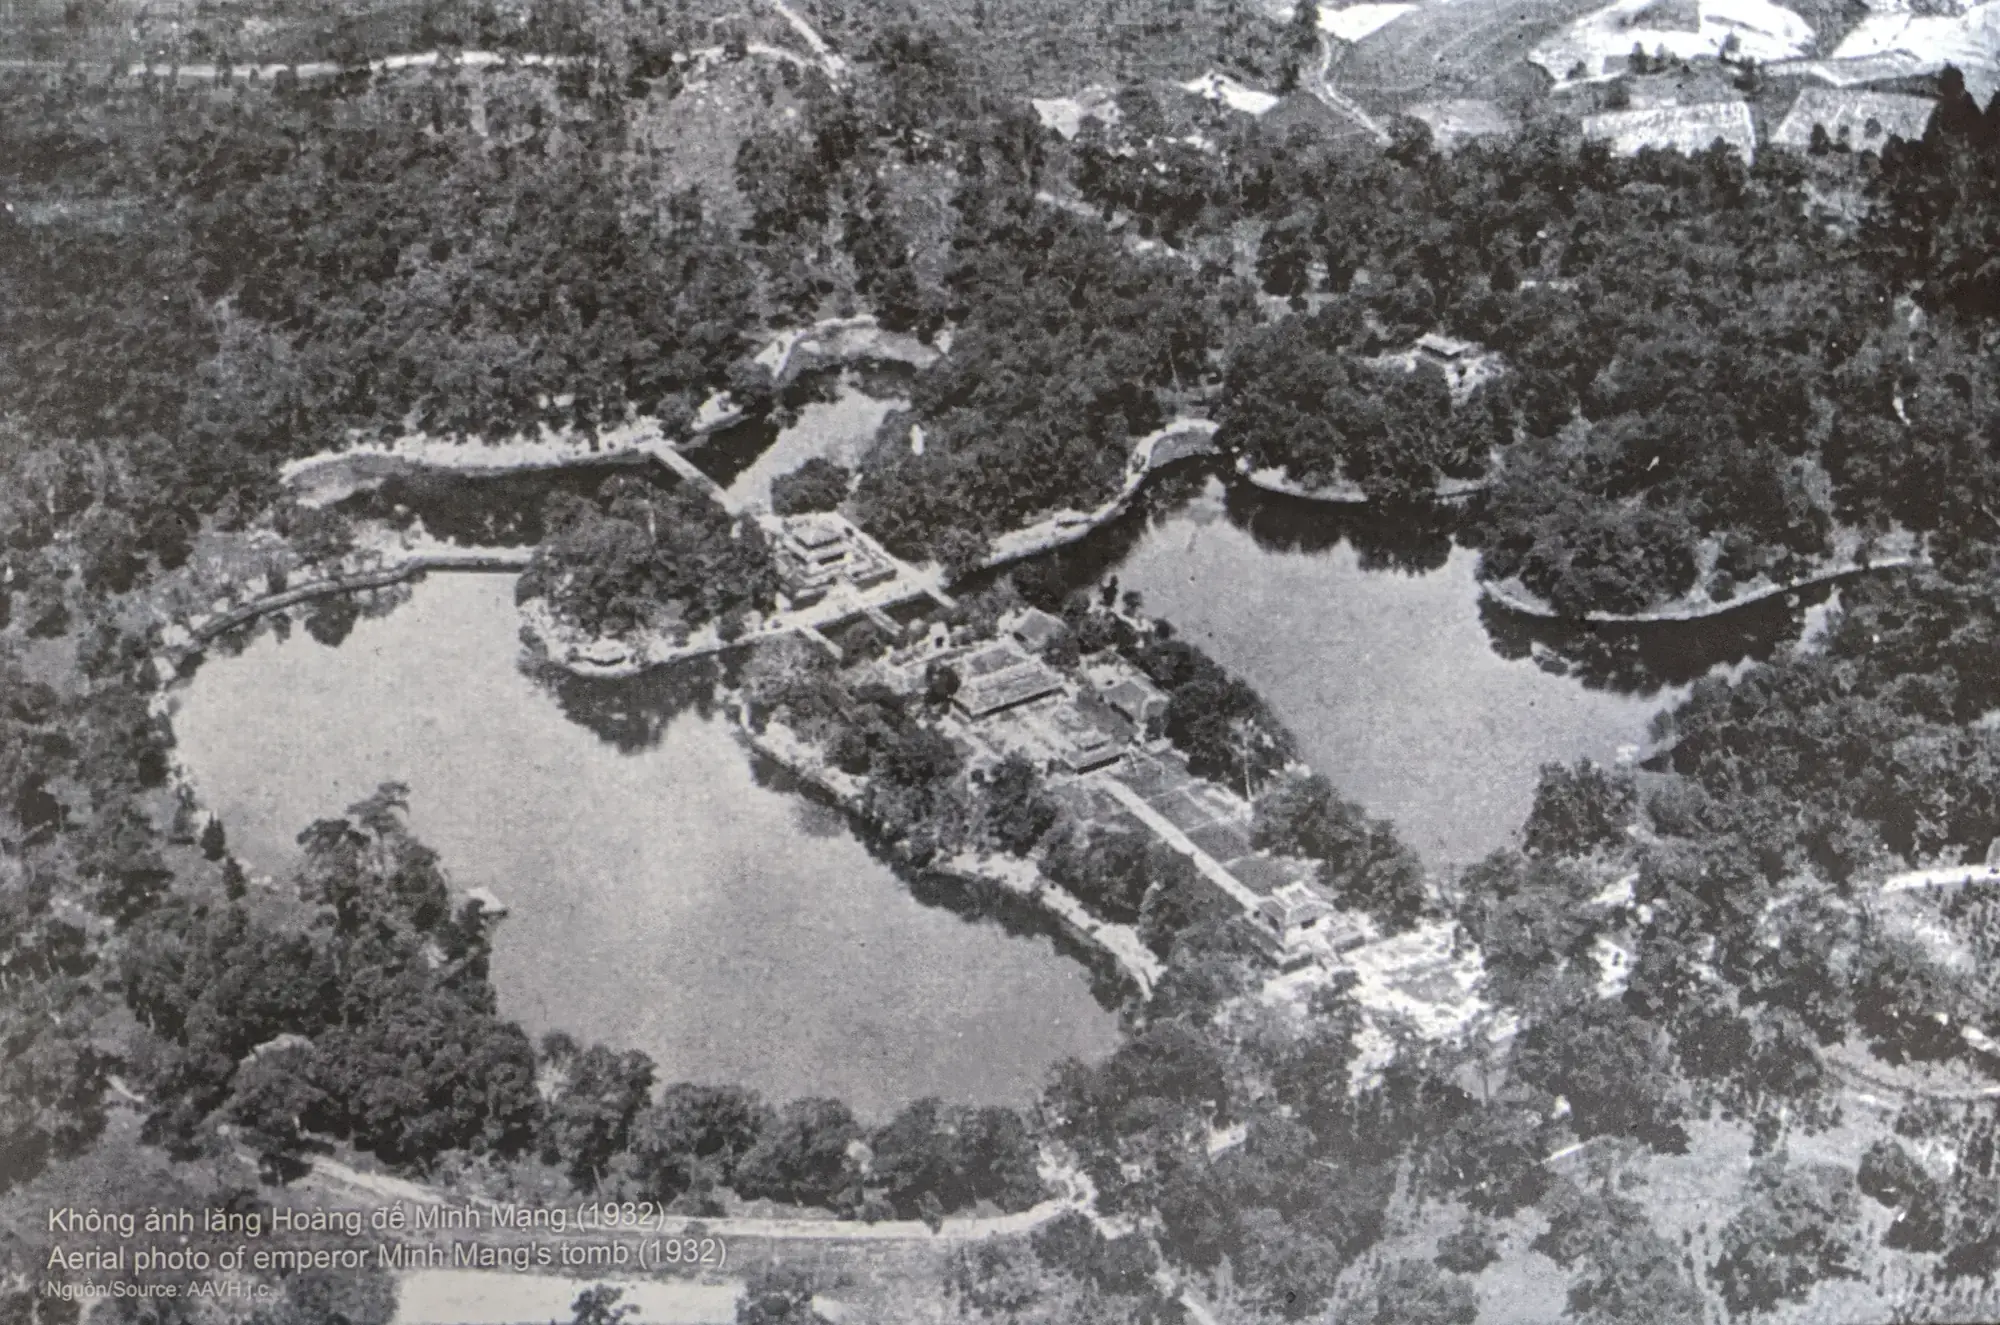 Ming Mang Mausoleum layout